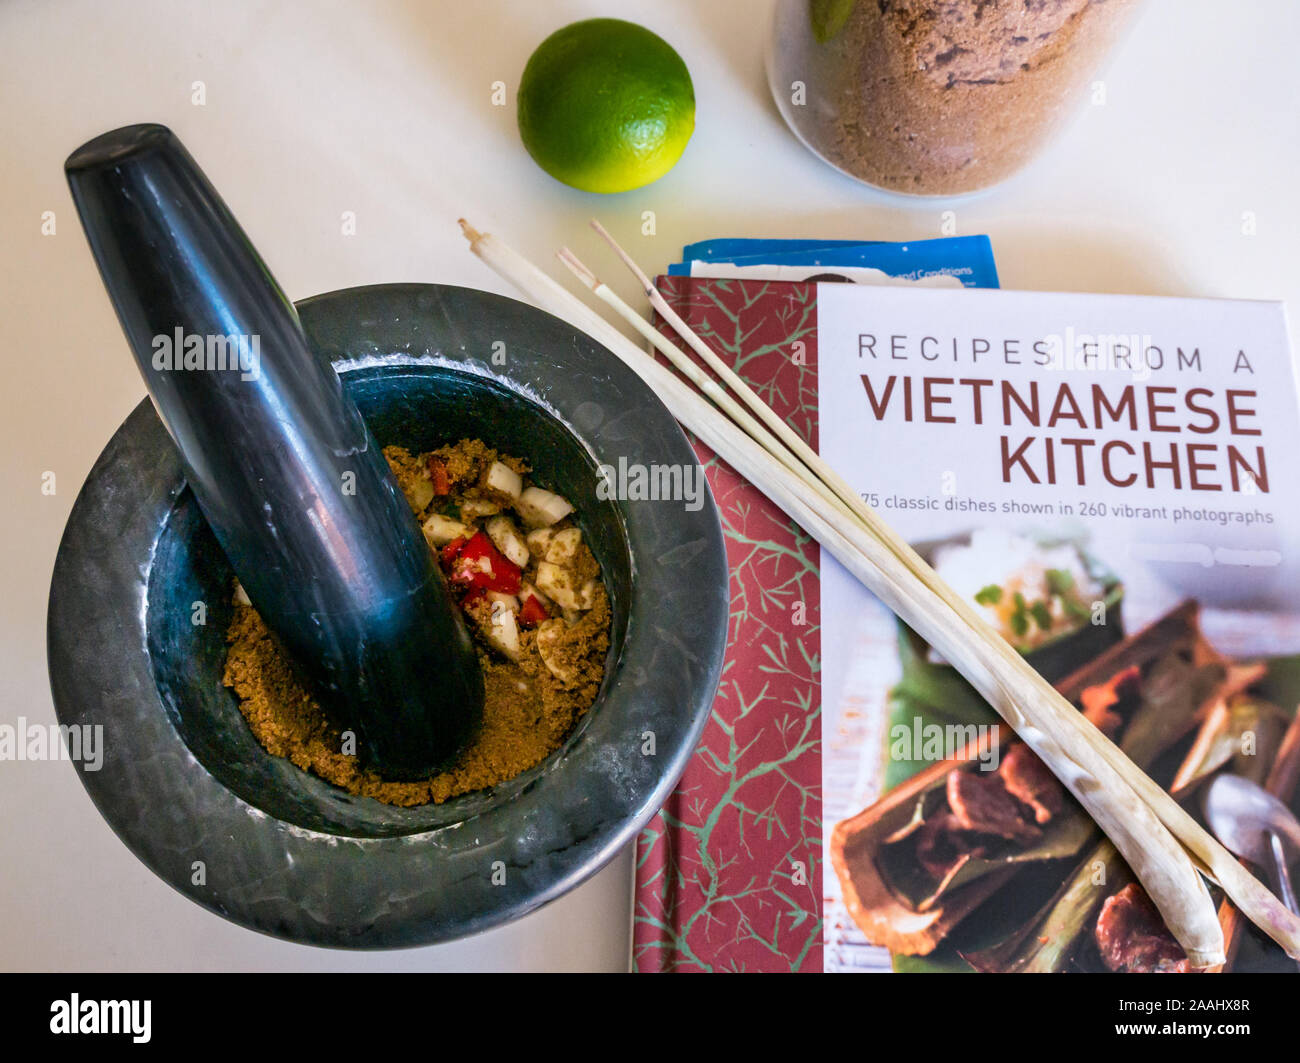 Stößel und Mörser & Zutaten für Nước chấm vietnamesische Dipping Sauce: Zitronengras, Limette & brauner Zucker. Vietnamesisches Kochbuch von Ghillie Basan Stockfoto